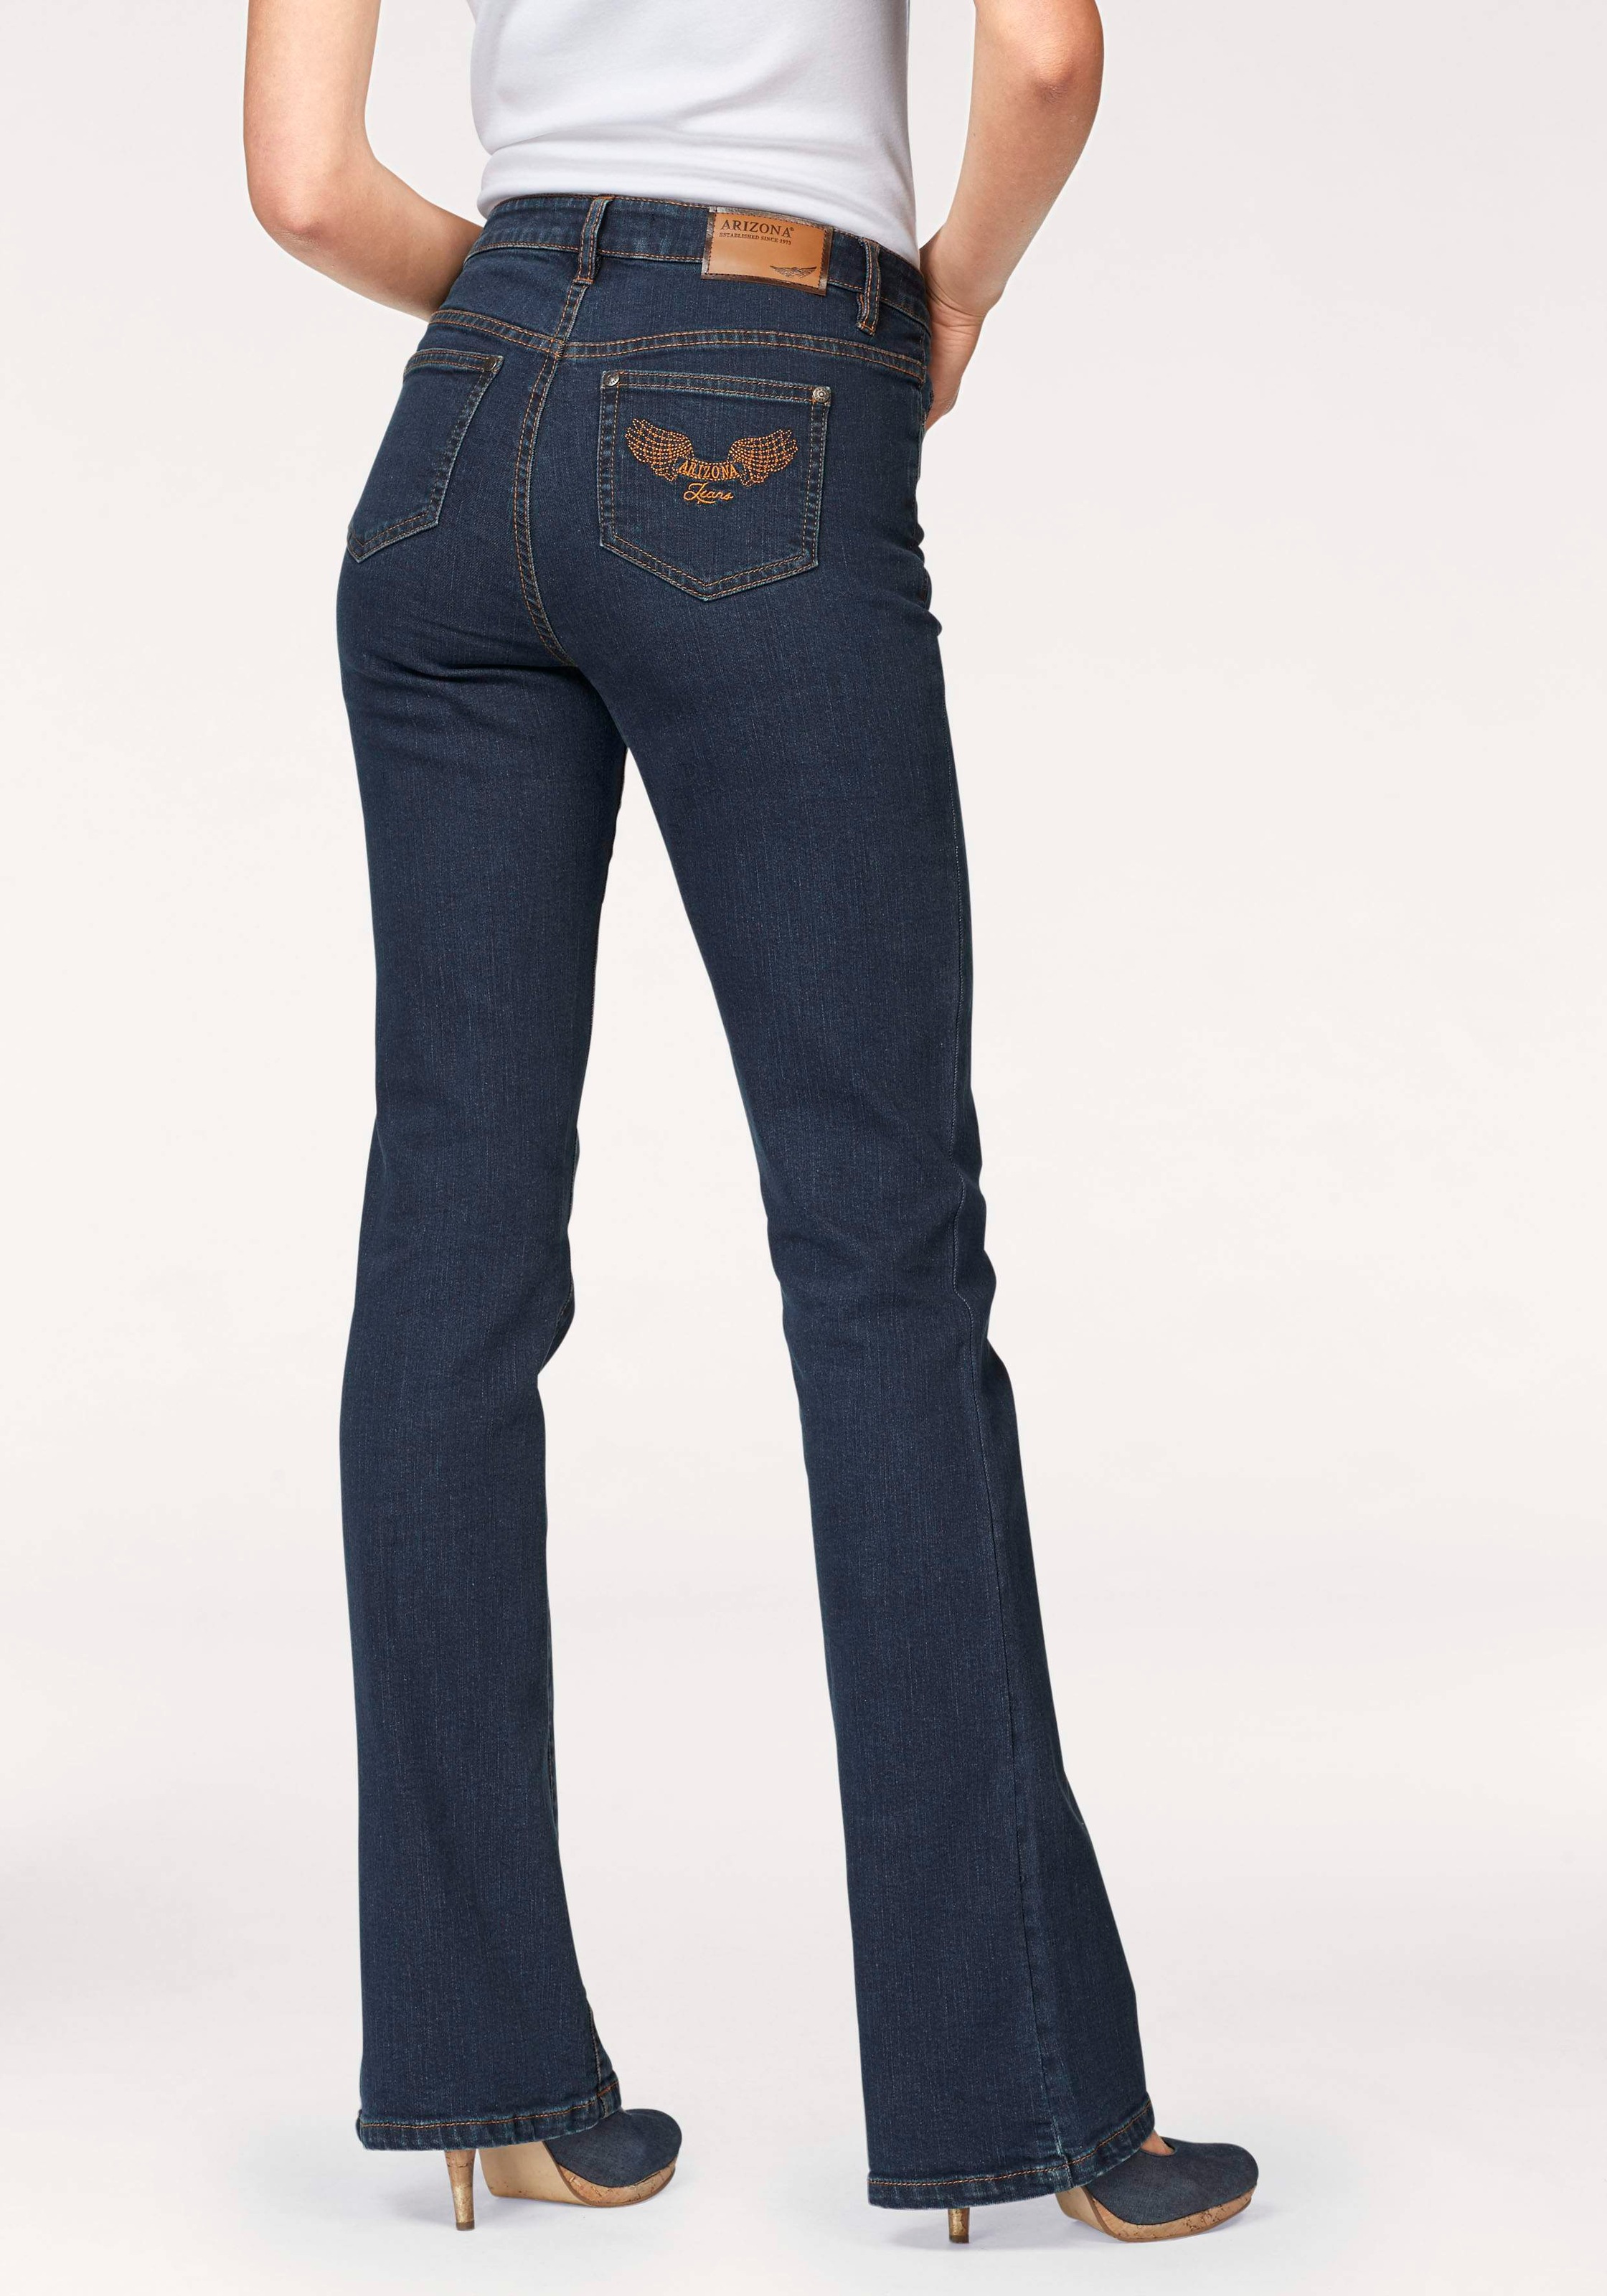 Arizona Bootcut  Jeans  Comfort Fit High  Waist  Damen High  